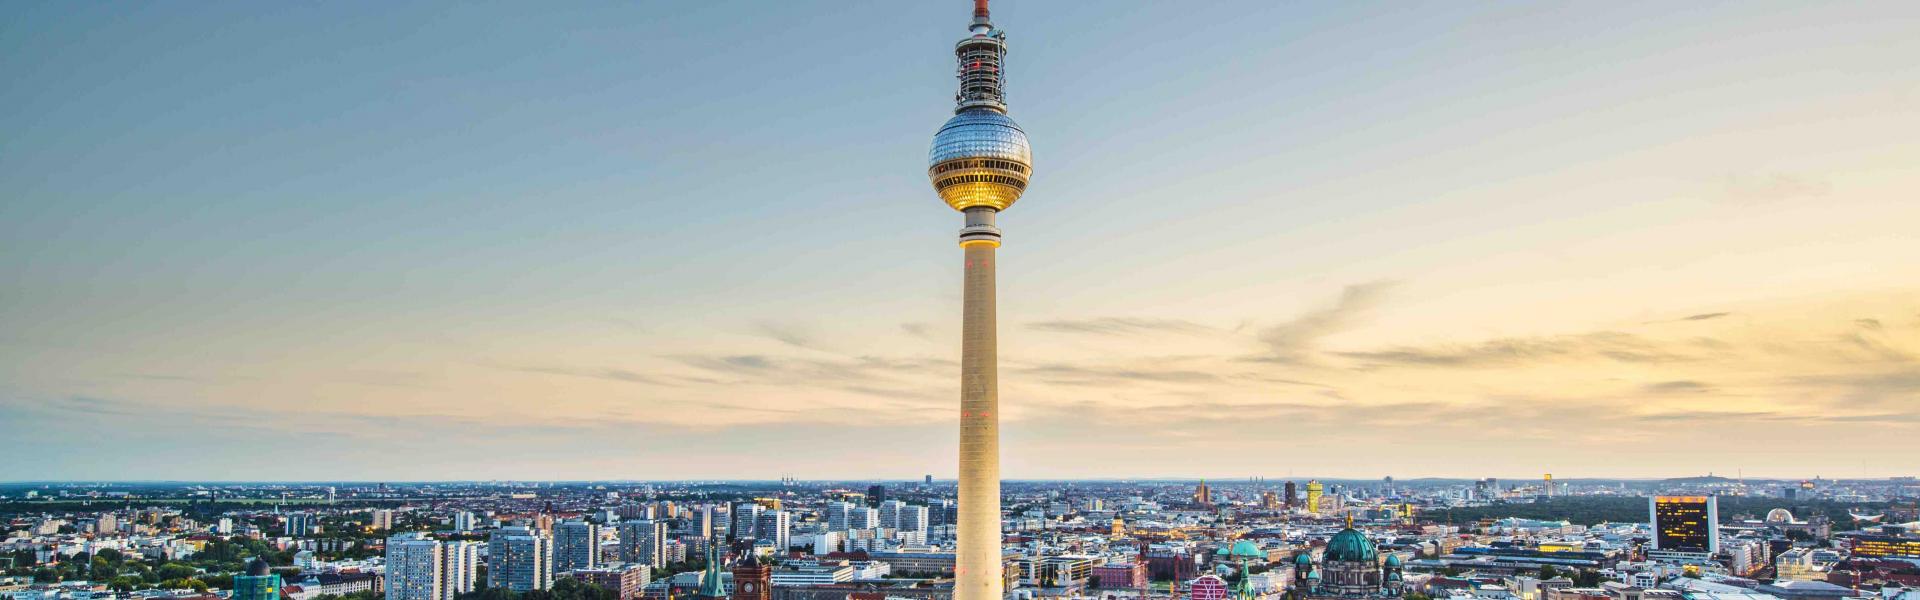 Visum Regelmæssigt Overflod Berlin: Ferieboliger fra 217 kr | HomeToGo